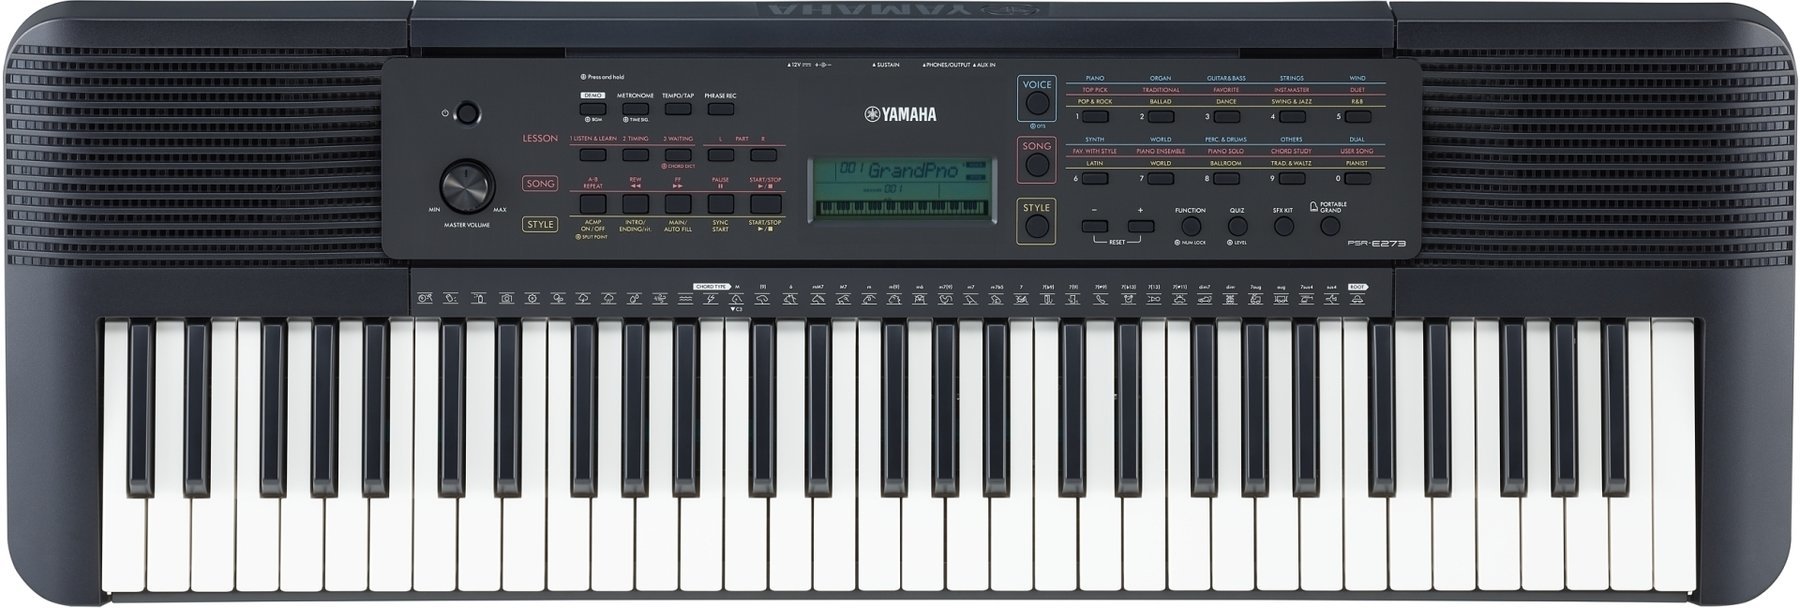 Keyboard without Touch Response Yamaha PSR-E273